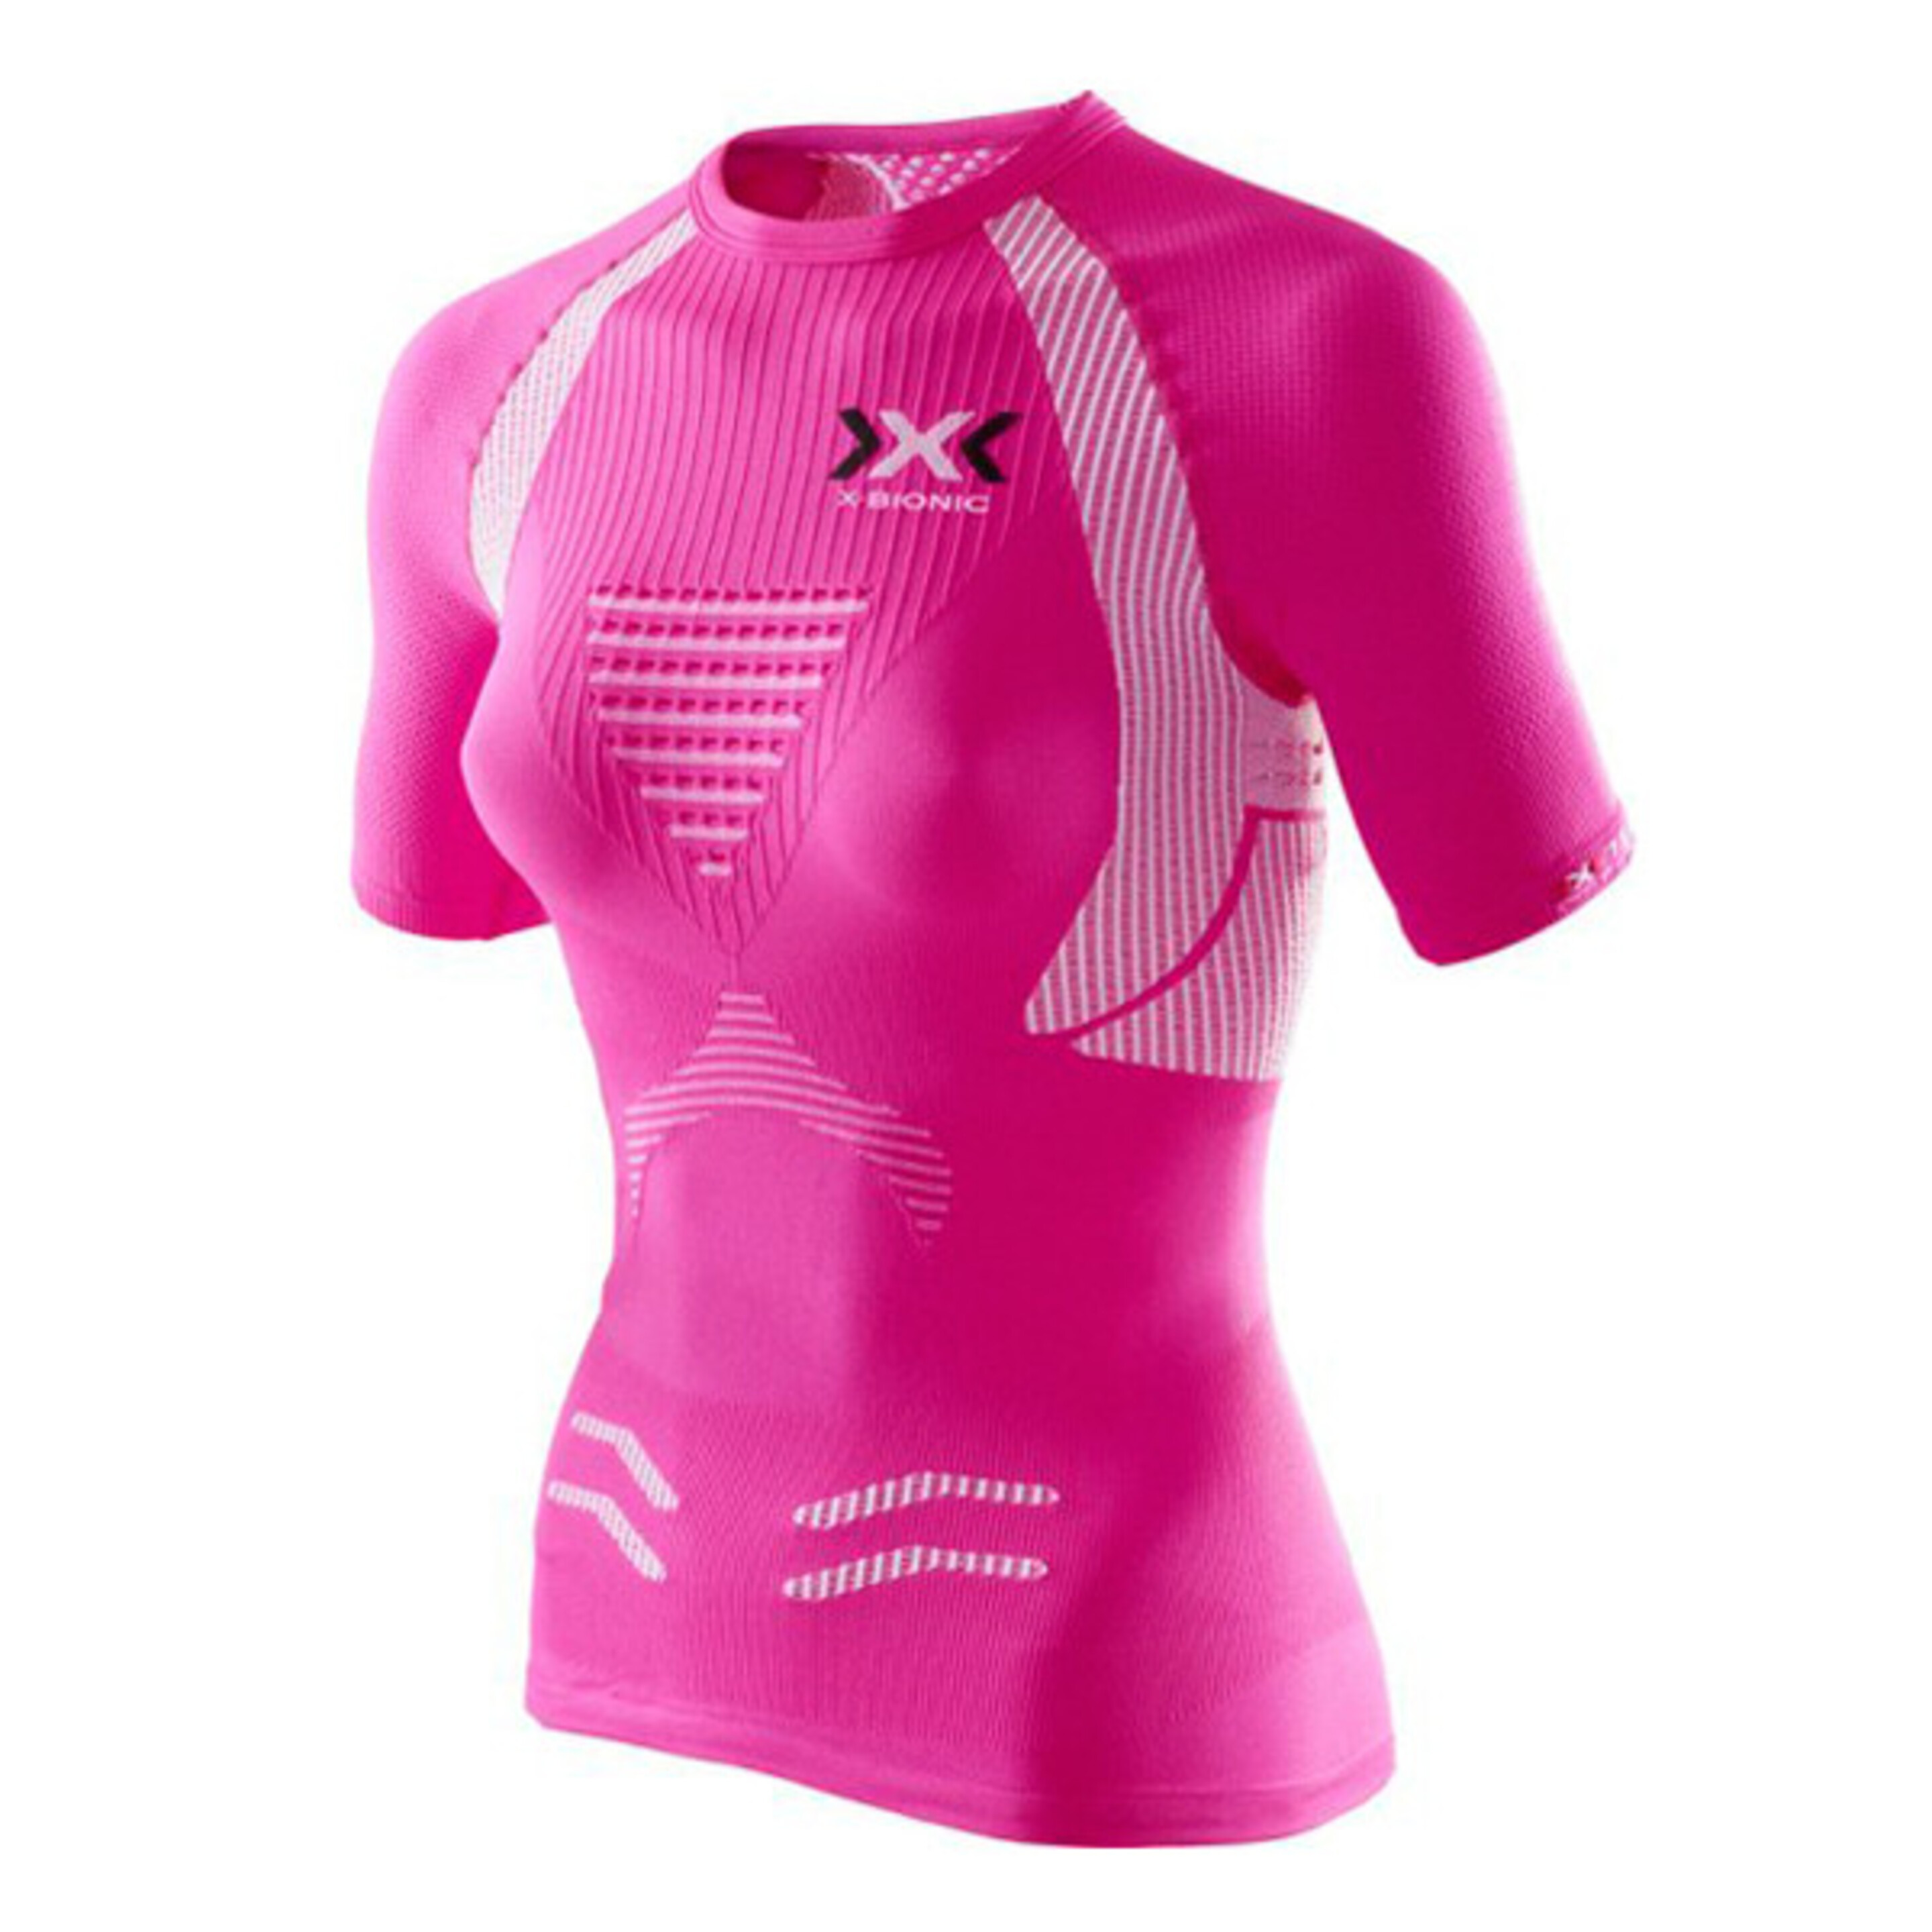 Camiseta M/c Running The Trick Evo De Mujer X-bionic - rosa - 